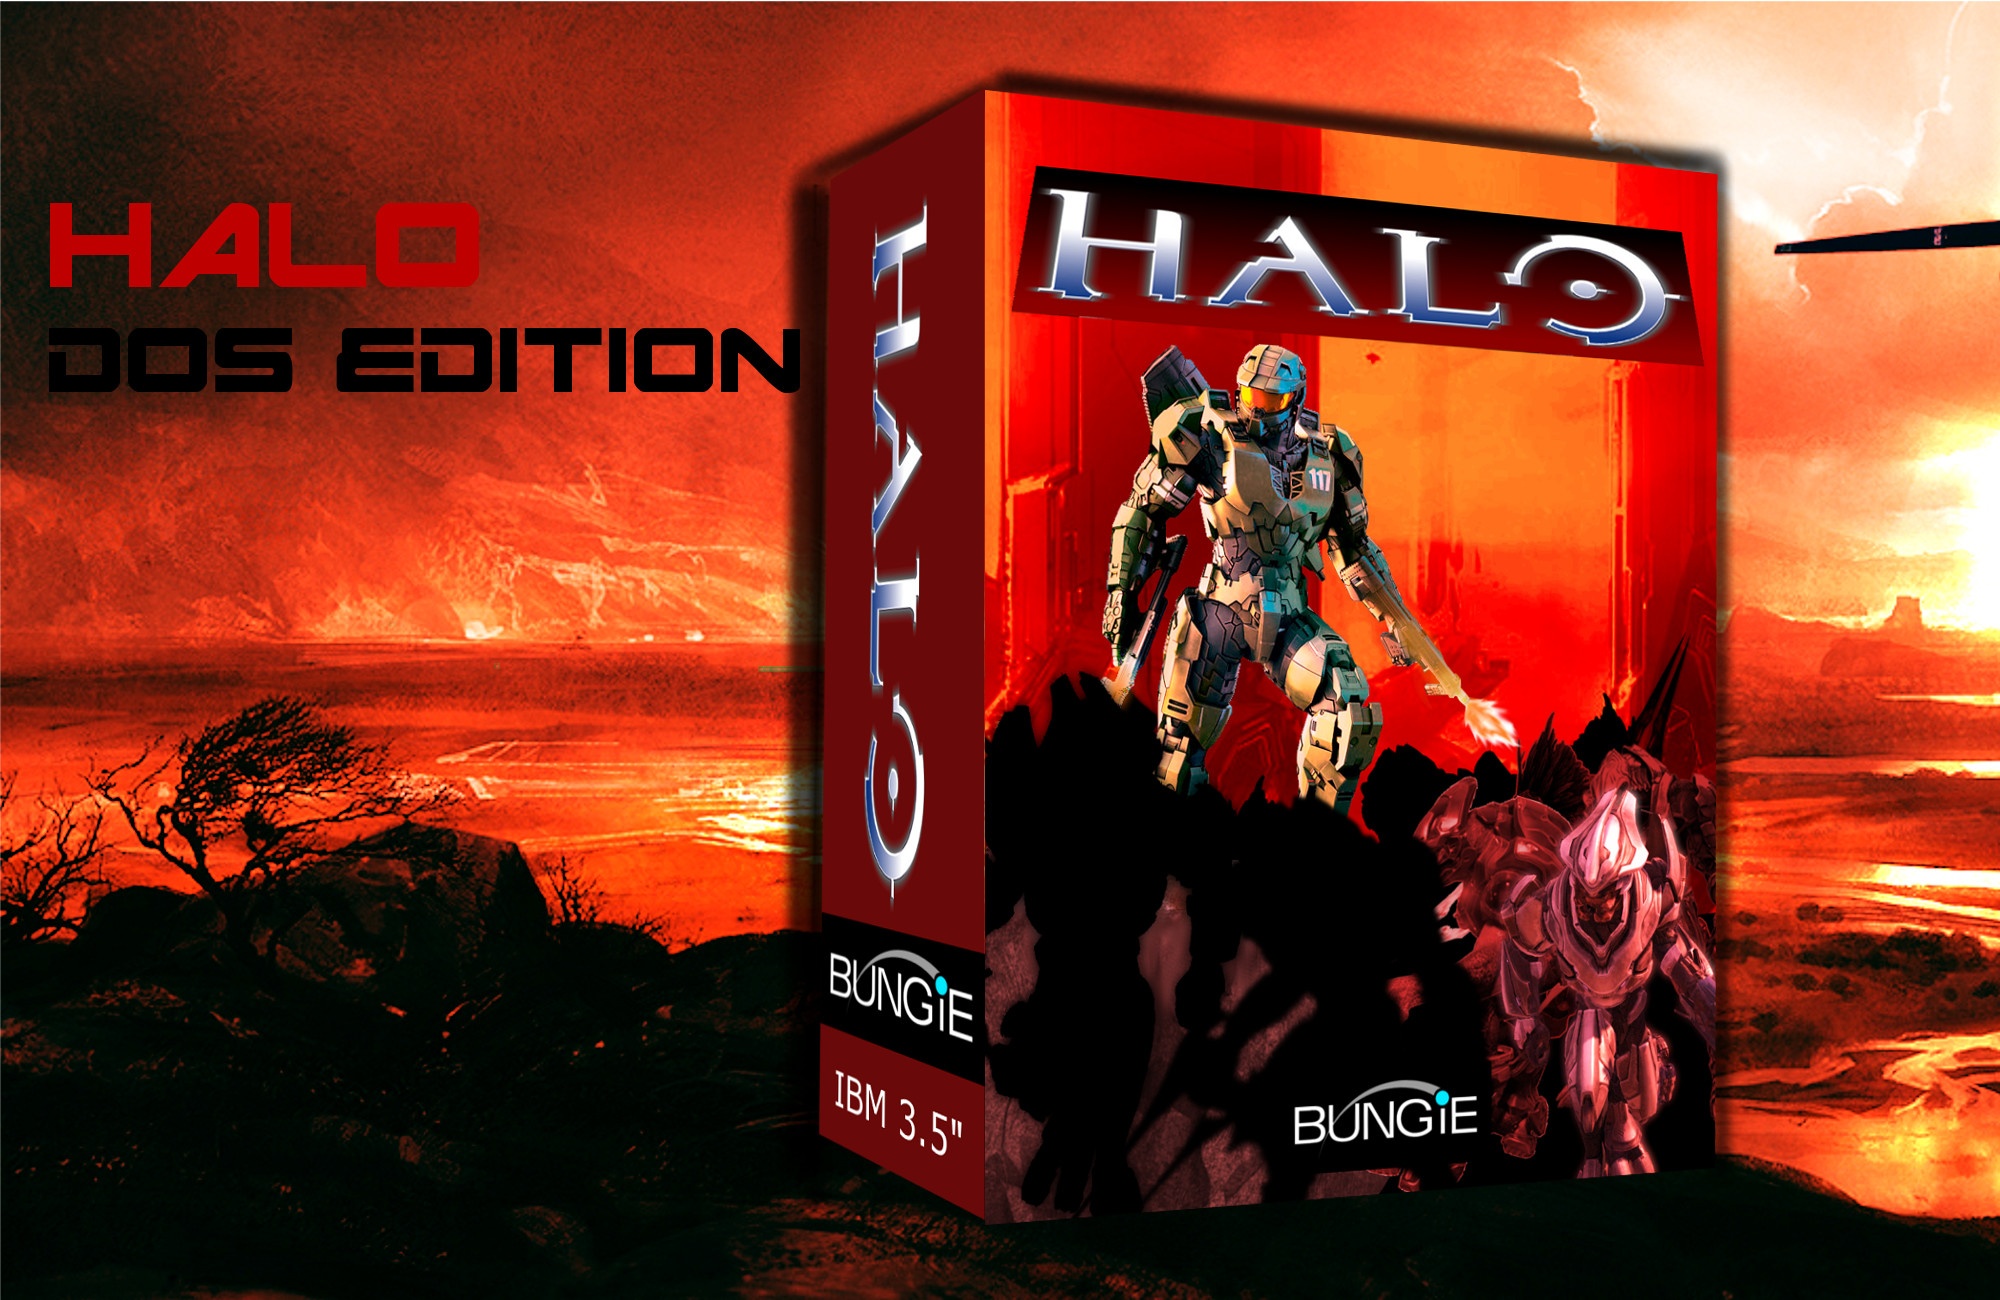 Halo - DOS Edition box cover